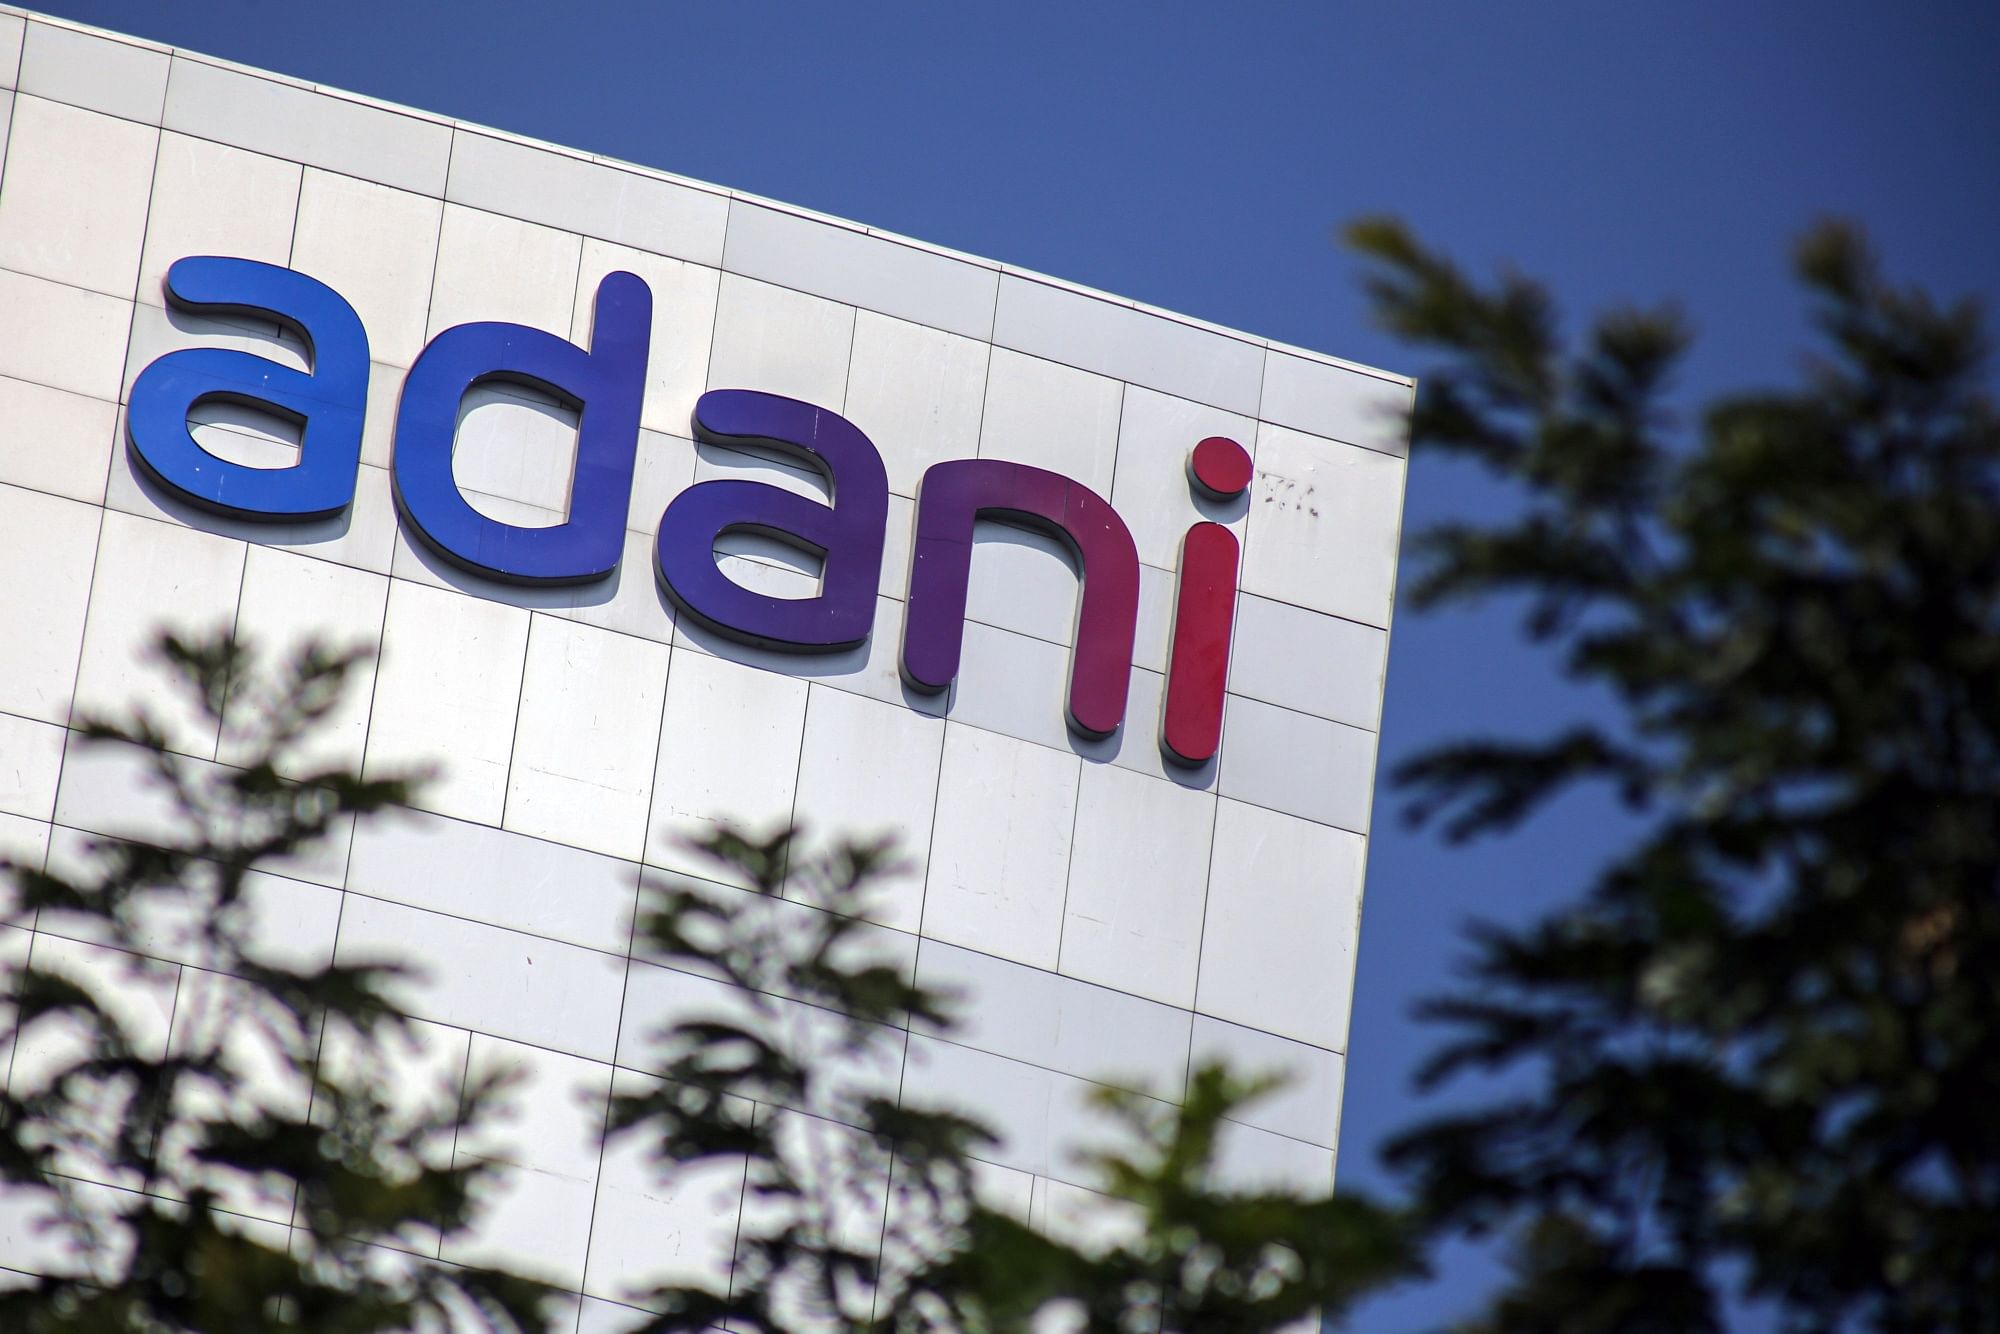 Adani’s data centre JV seeking second dollar loan in six months